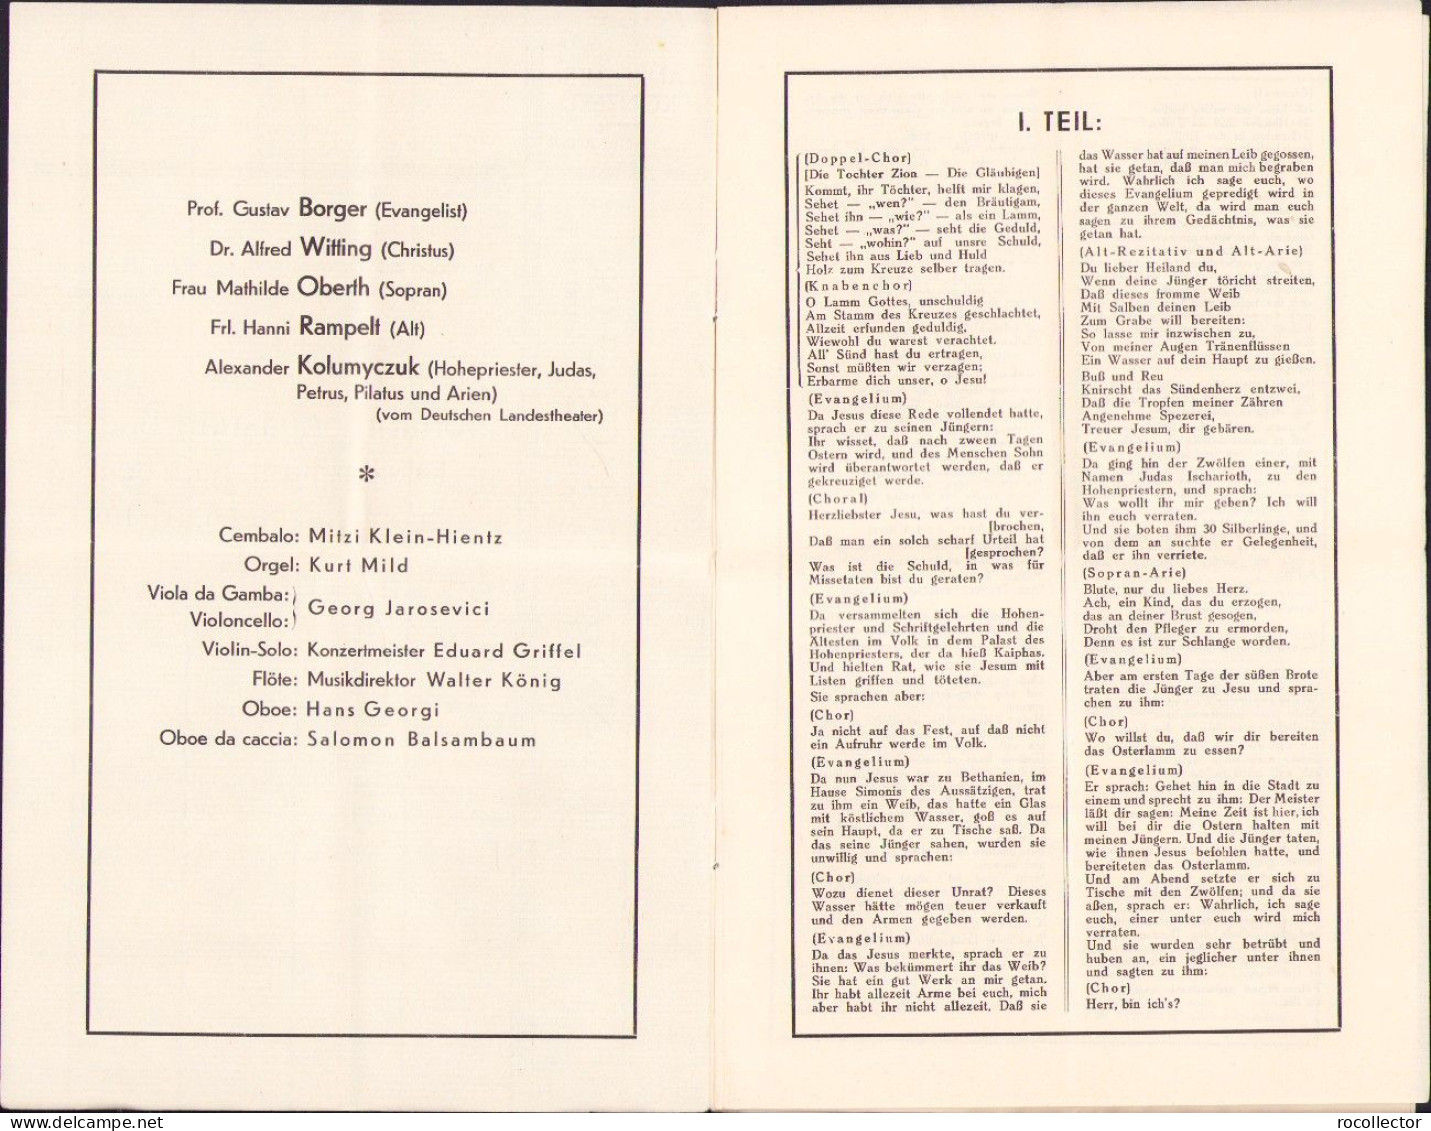 Hermanstädter Bach-Chor, Anrechts-Konzert, Program, 1935, Sibiu A2477N - Programs